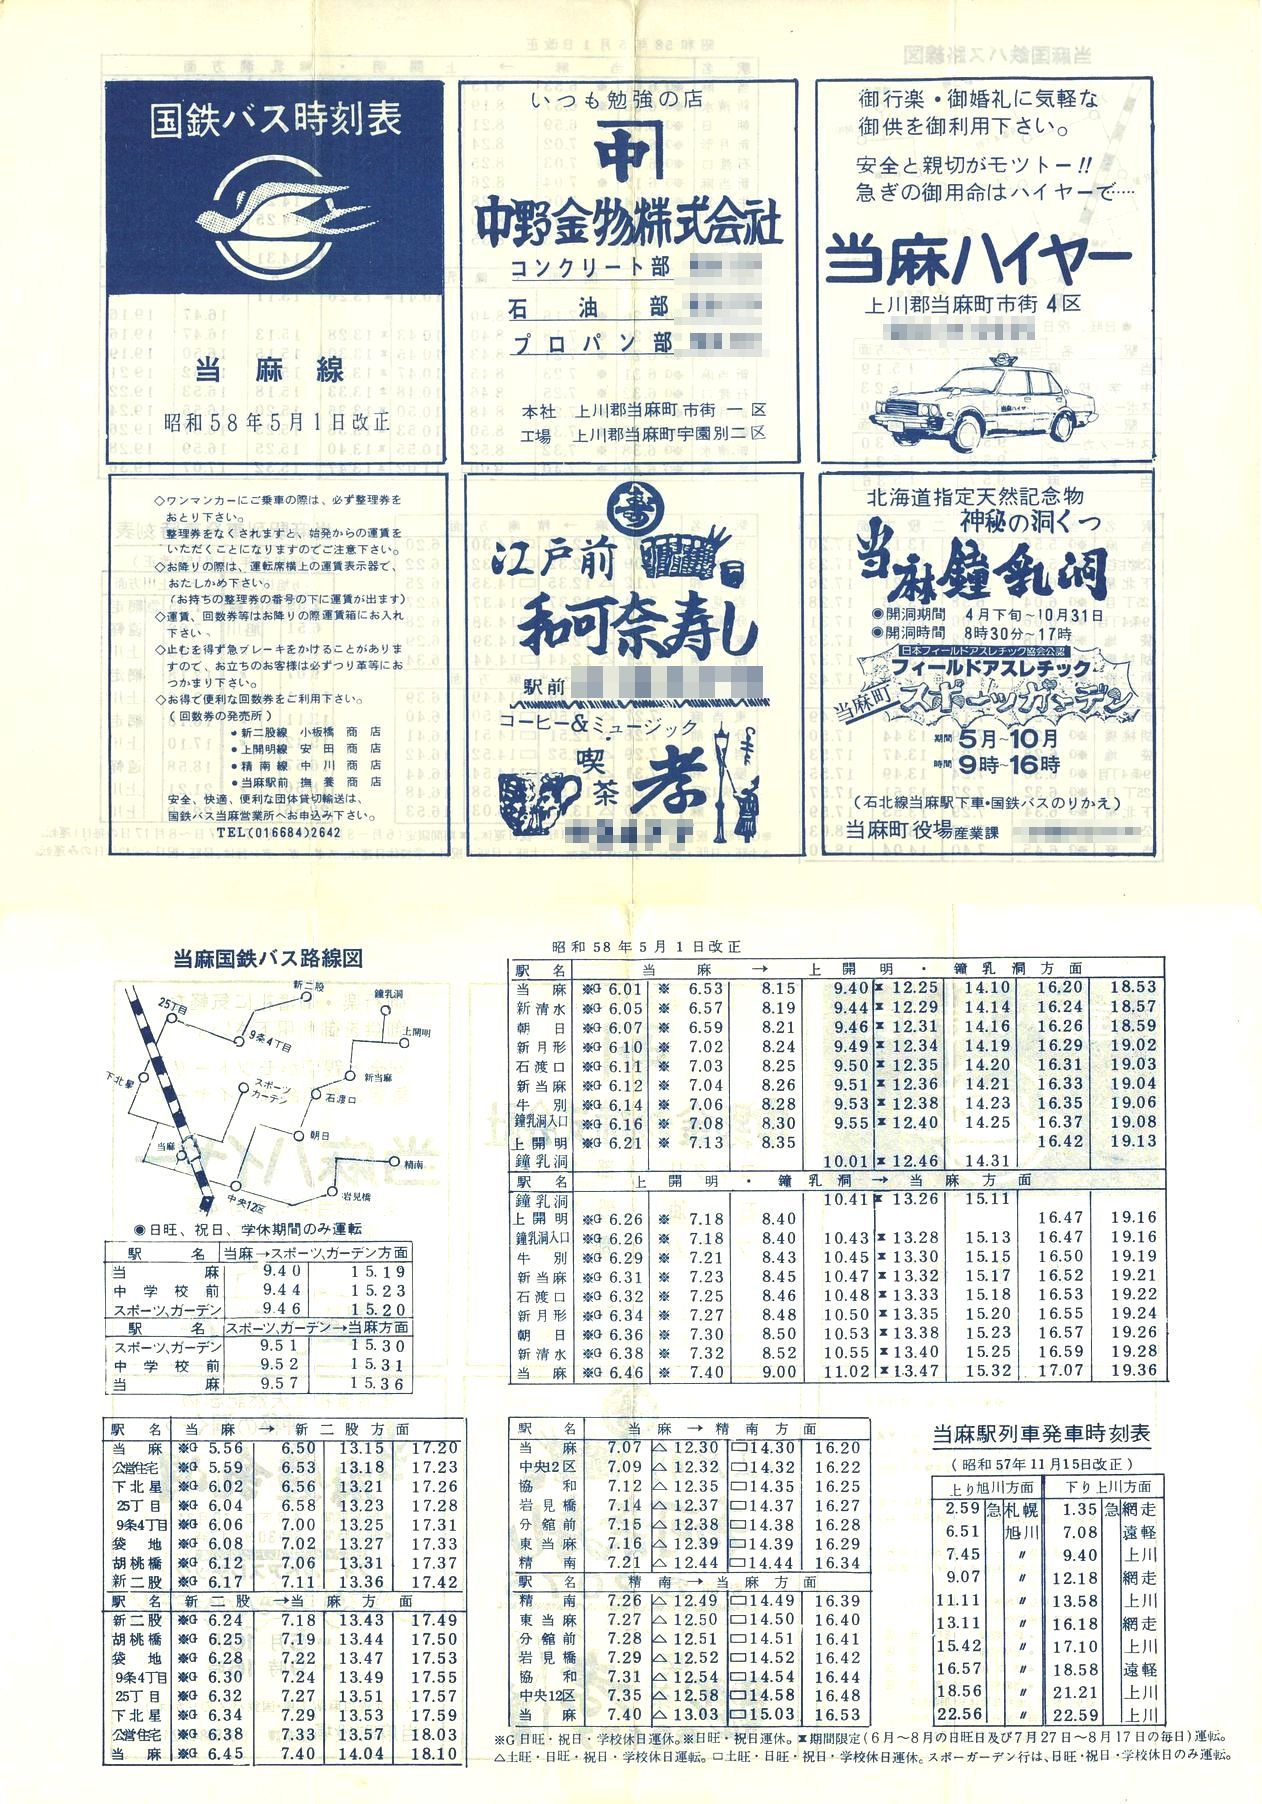 1983-05-01改正_国鉄バス_当麻線時刻表